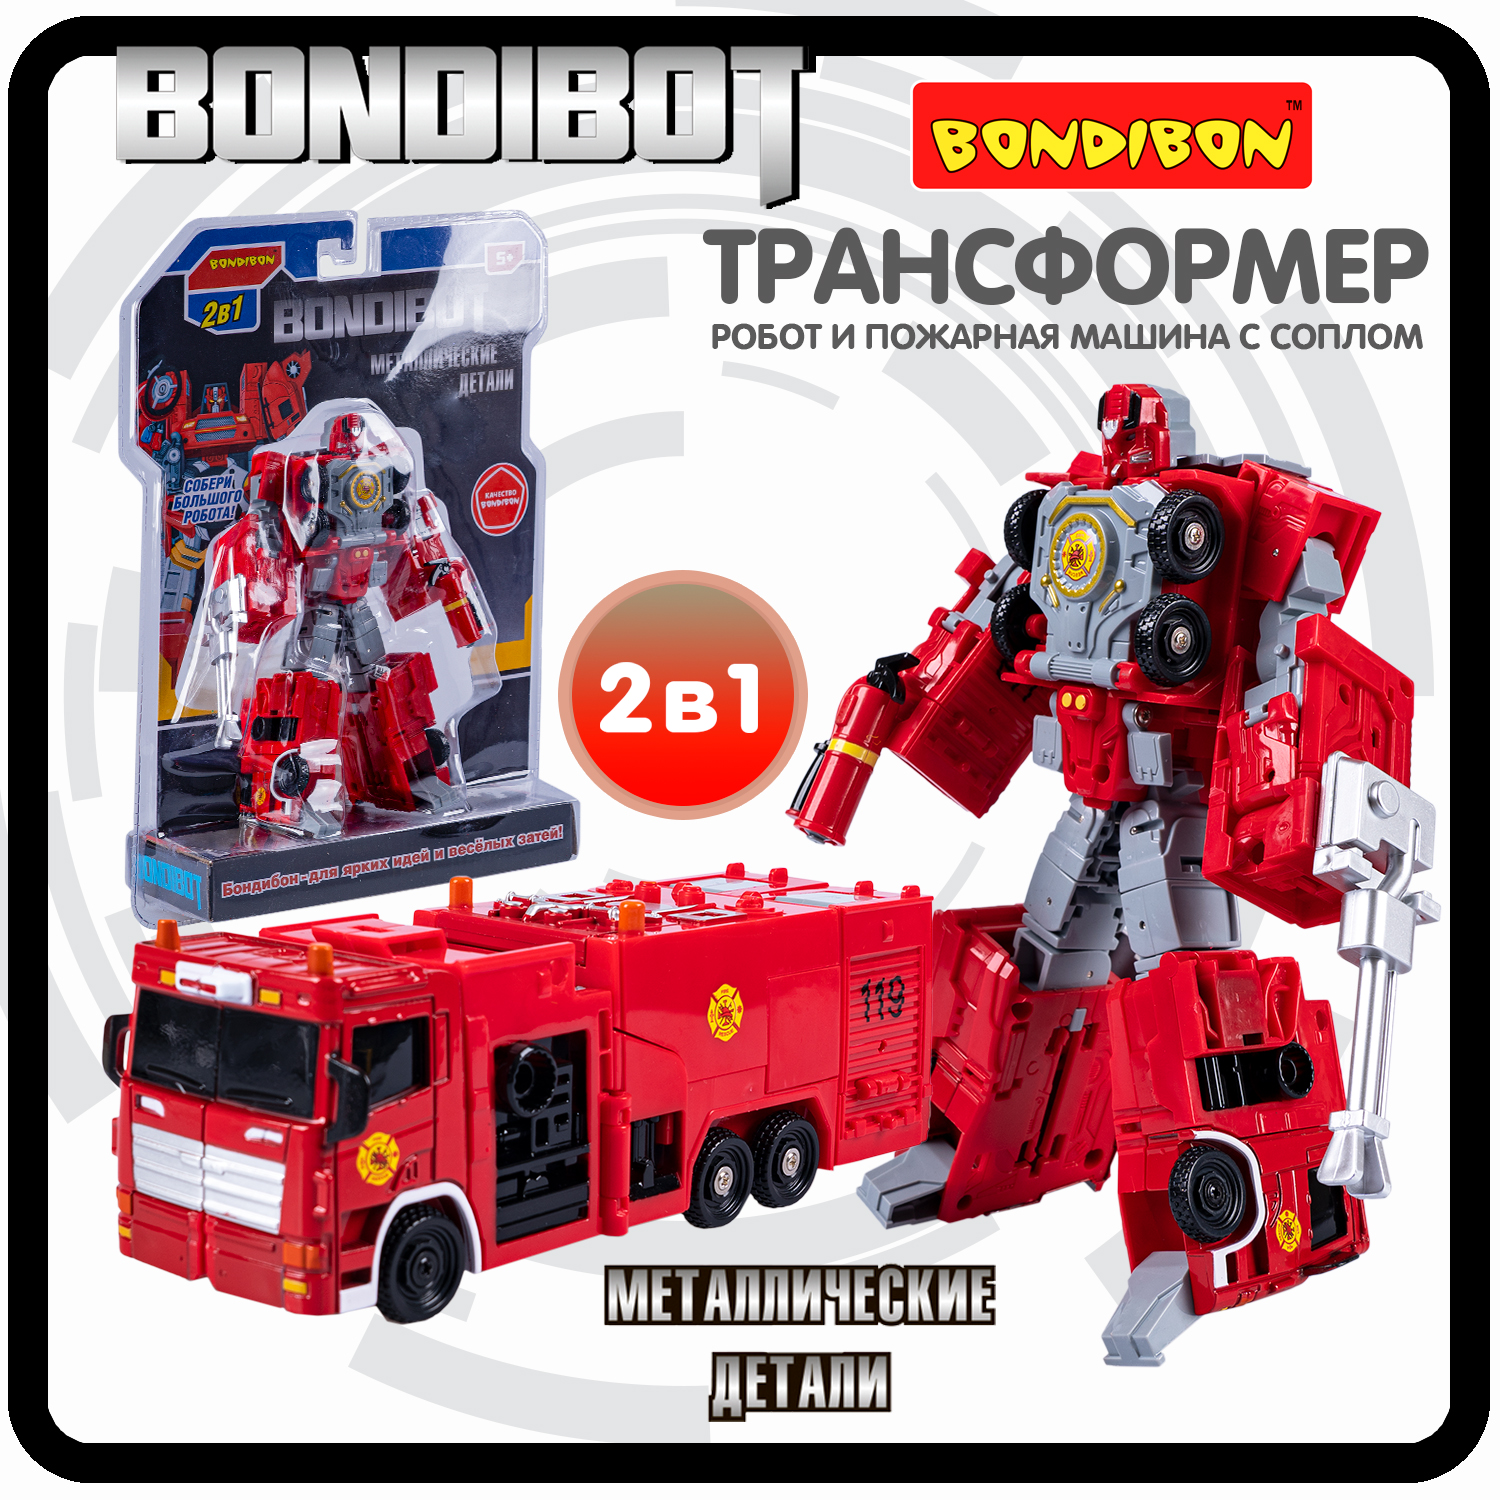 Робот трансформер 2в1 Bondibon BONDIBOT пожарная машина с соплом